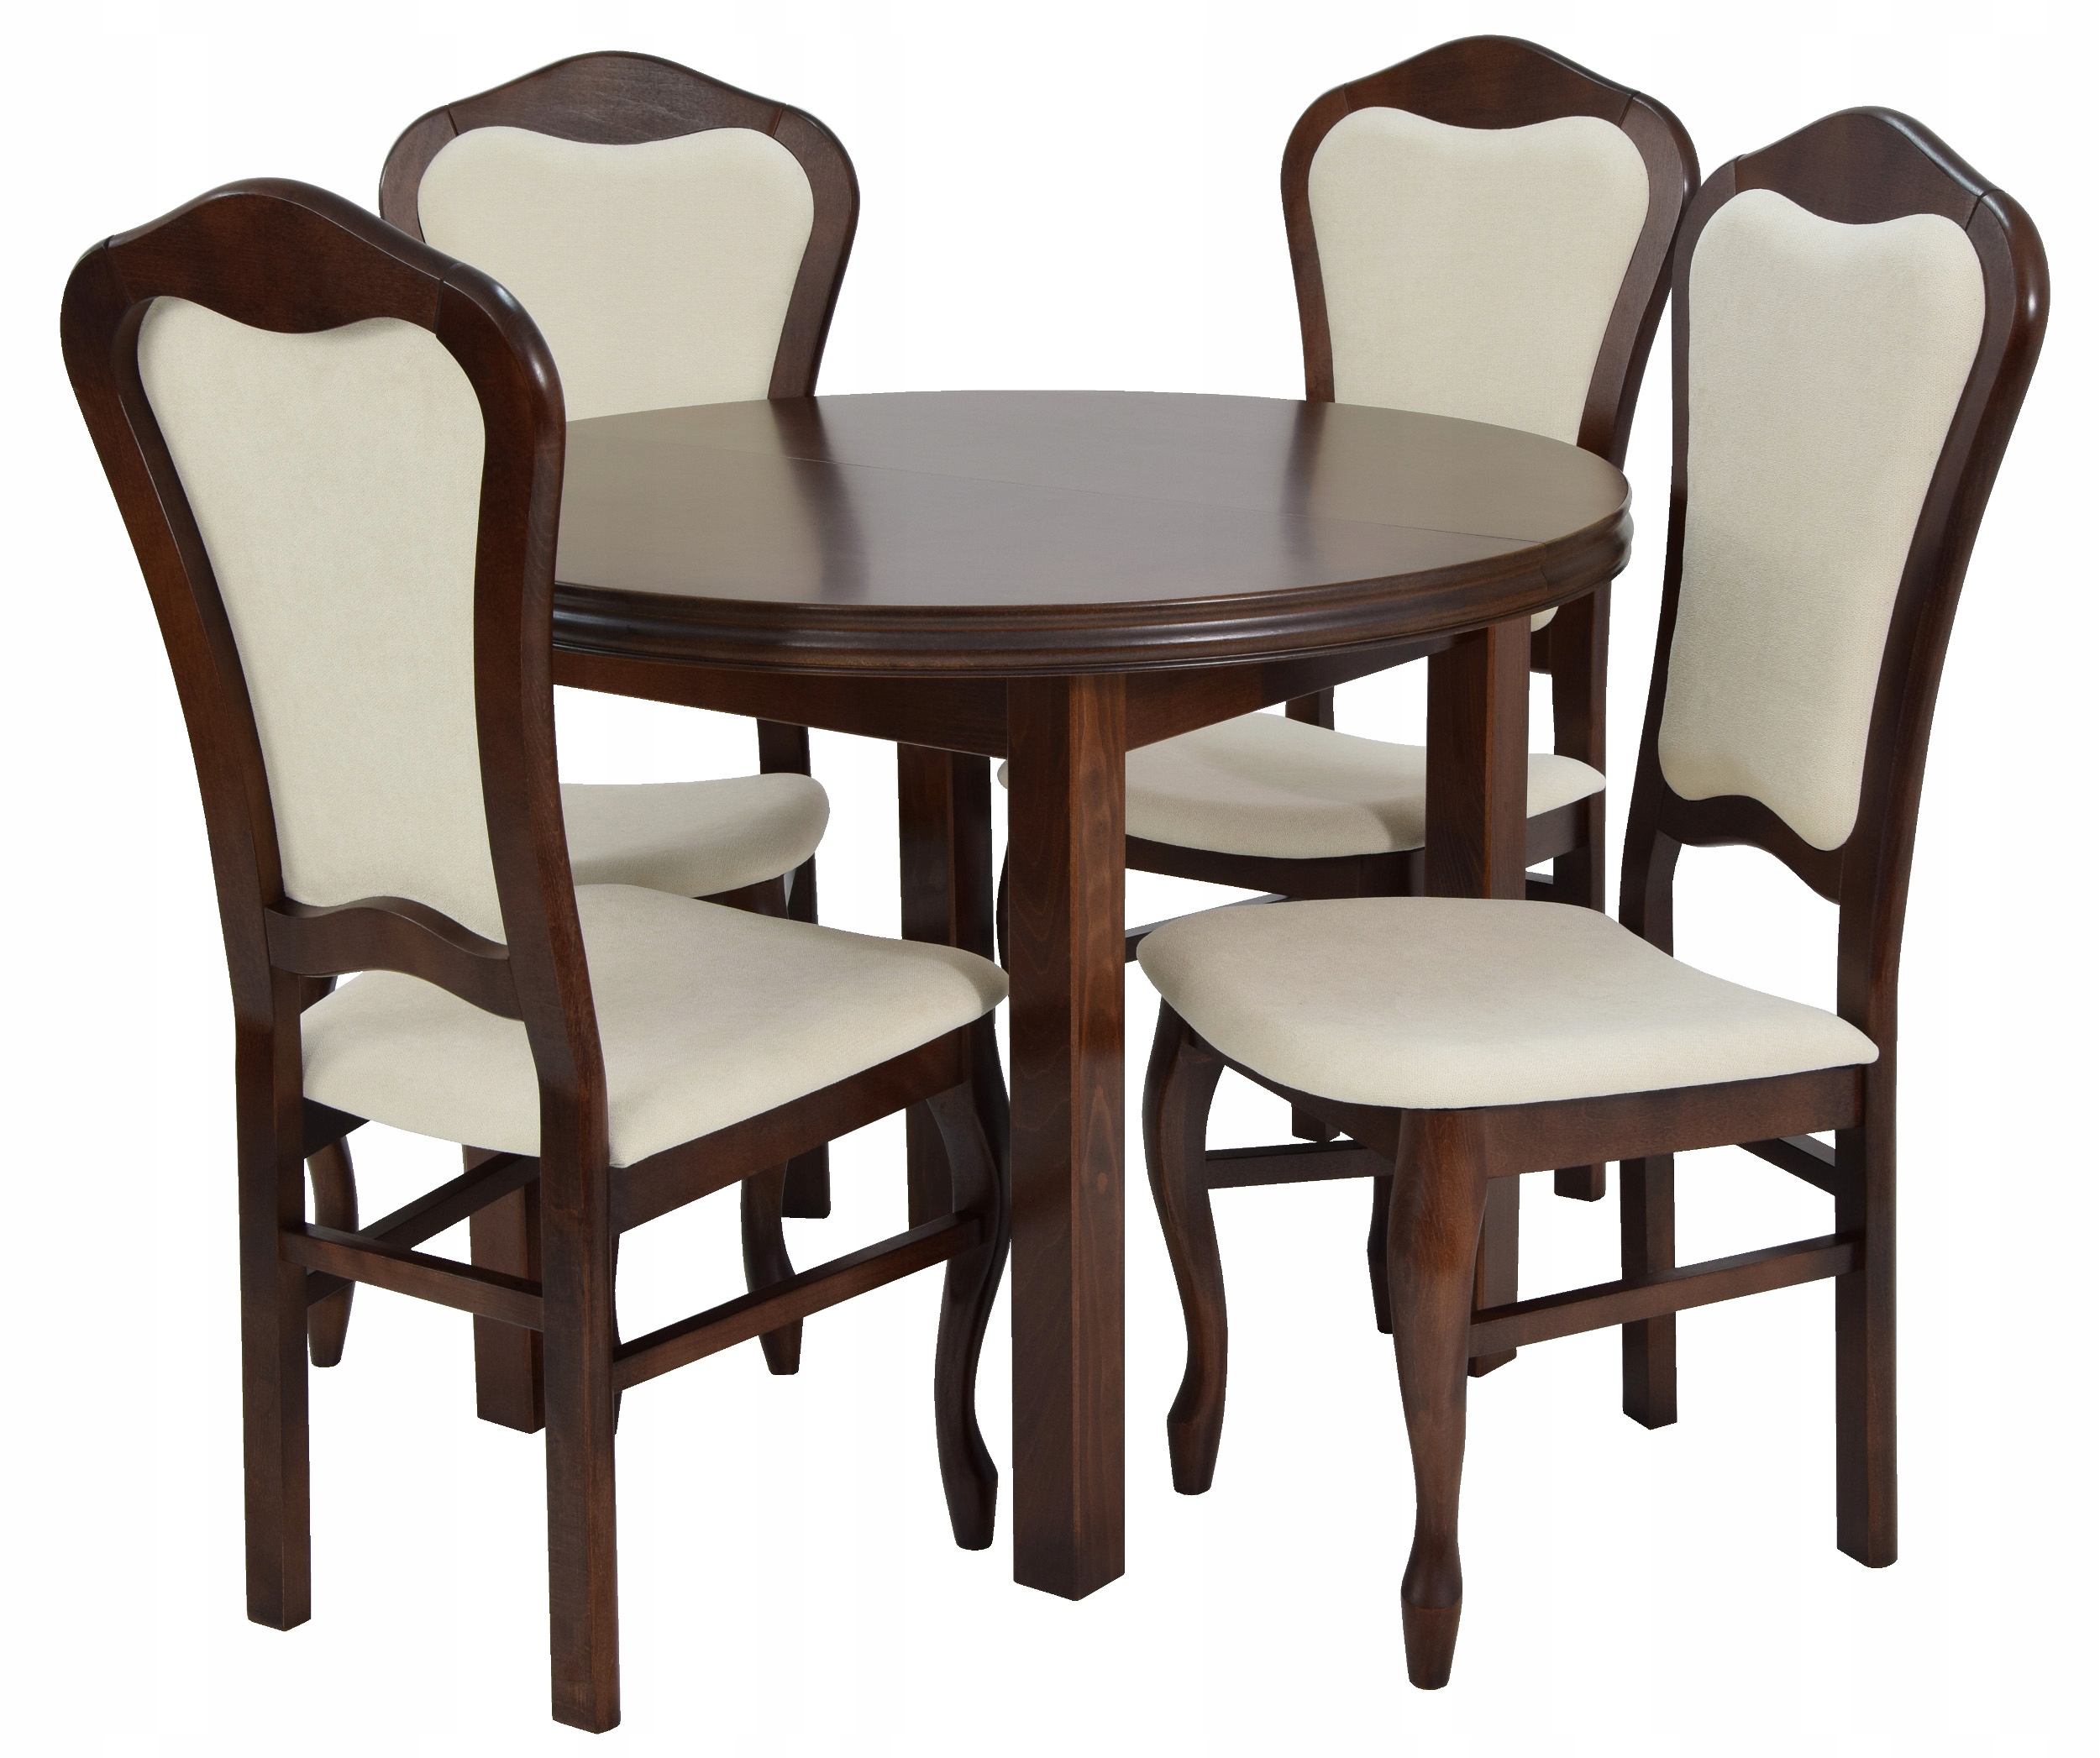 Стулья для кухни комплект 4. Большой стол 12 стульев 100x200300. Комплект Langfang: стол + 4 стула. Столы и стулья для кухни. Кухонный стол и стулья.